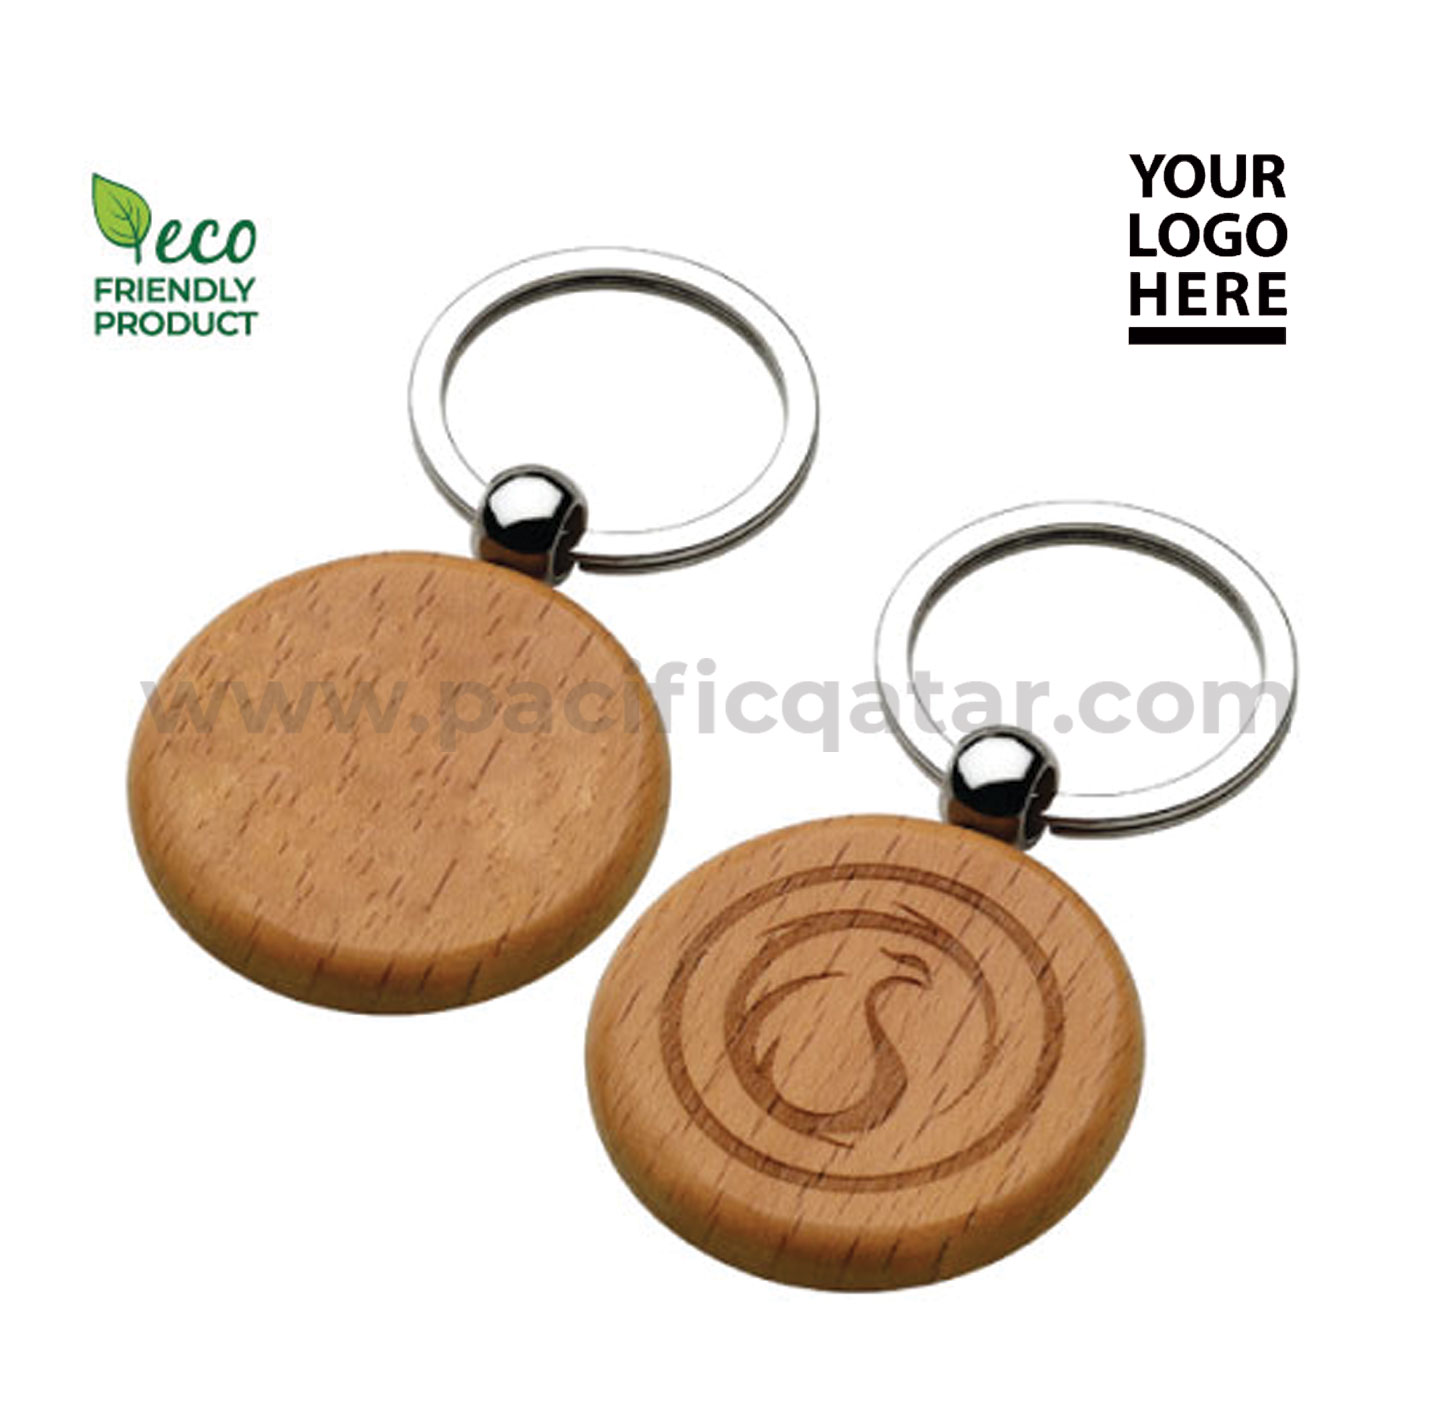 Round wooden keychains